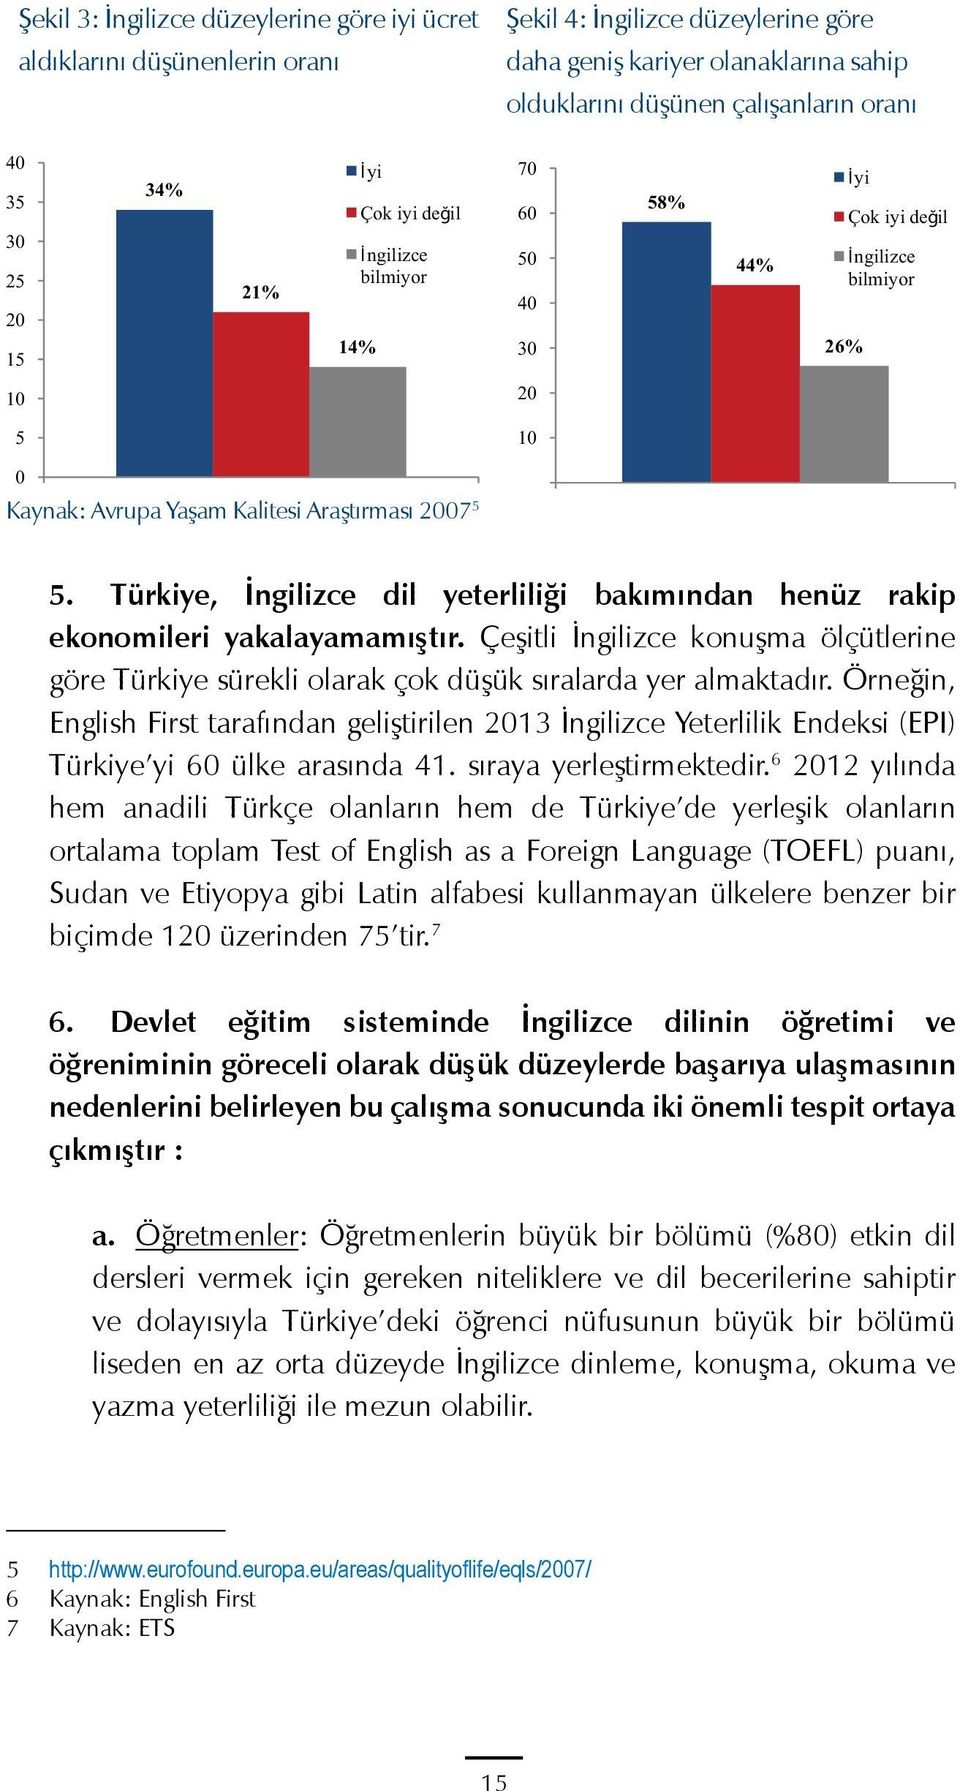 Türkiye, İngilizce dil yeterliliği bakımından henüz rakip ekonomileri yakalayamamıştır. Çeşitli İngilizce konuşma ölçütlerine göre Türkiye sürekli olarak çok düşük sıralarda yer almaktadır.